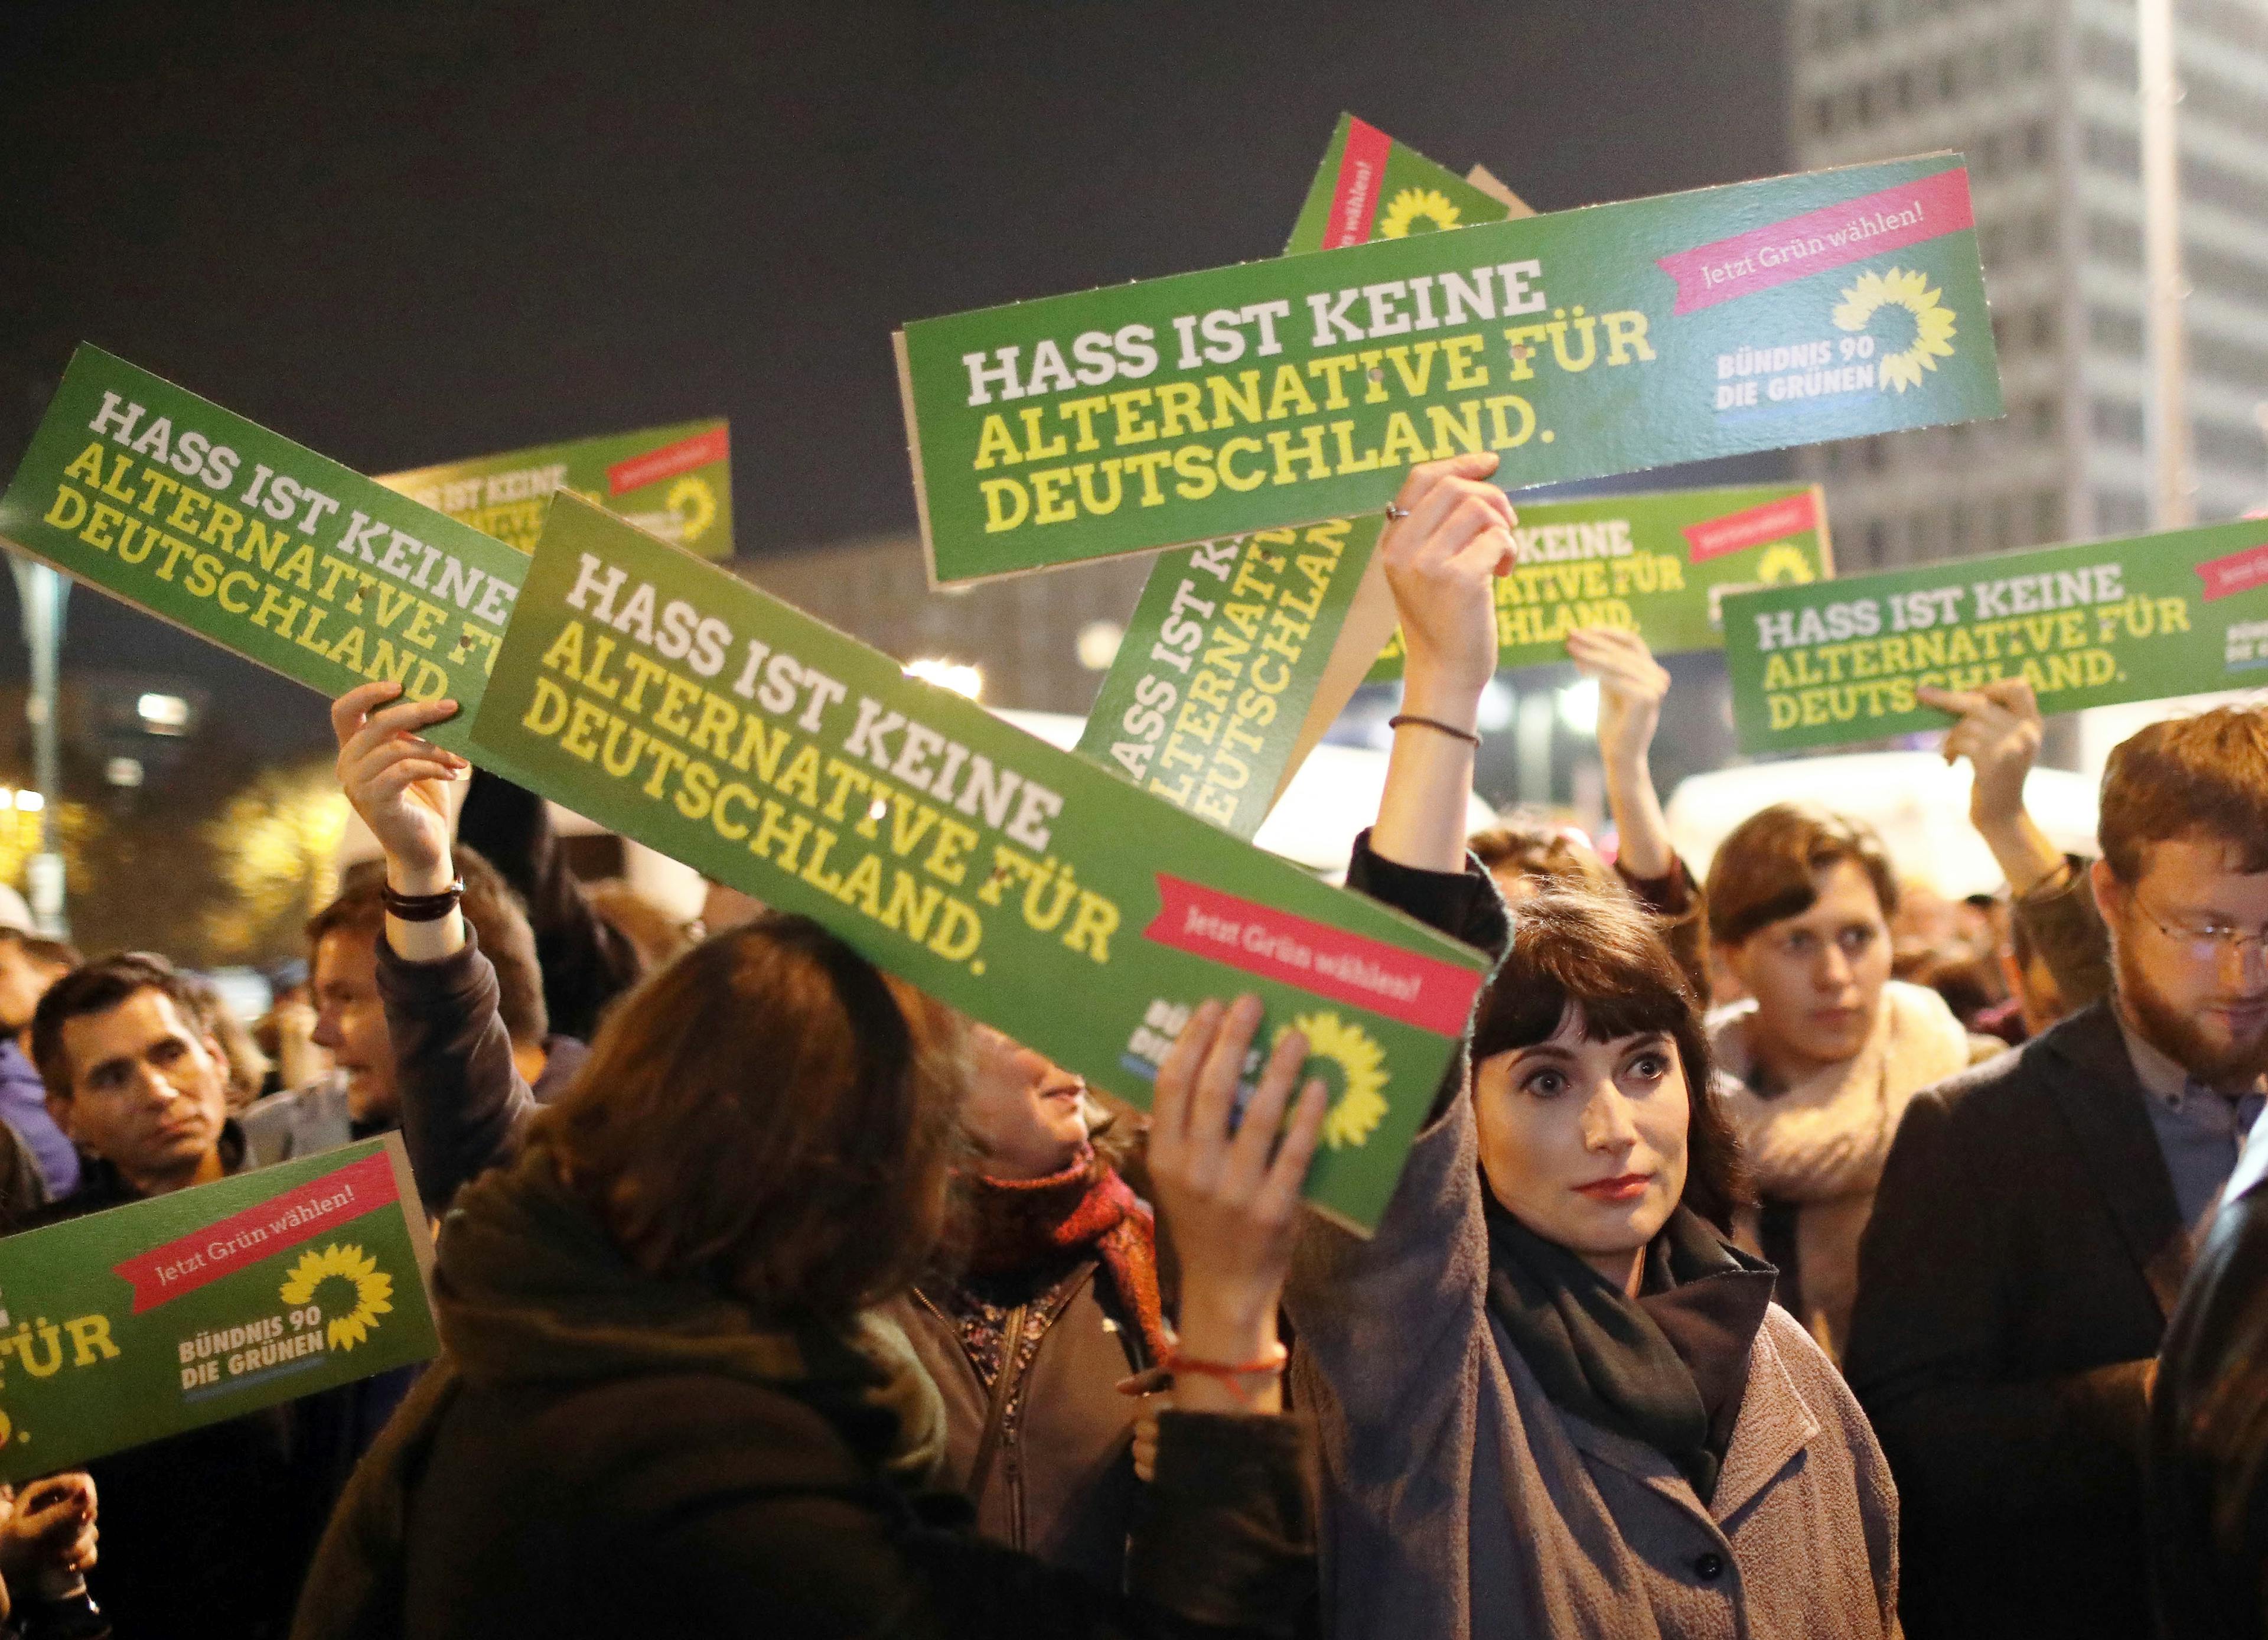 Personen, die bei einer Demo Schilder hochhalten. Text: "Hass ist keine Alternative für Deutschland."